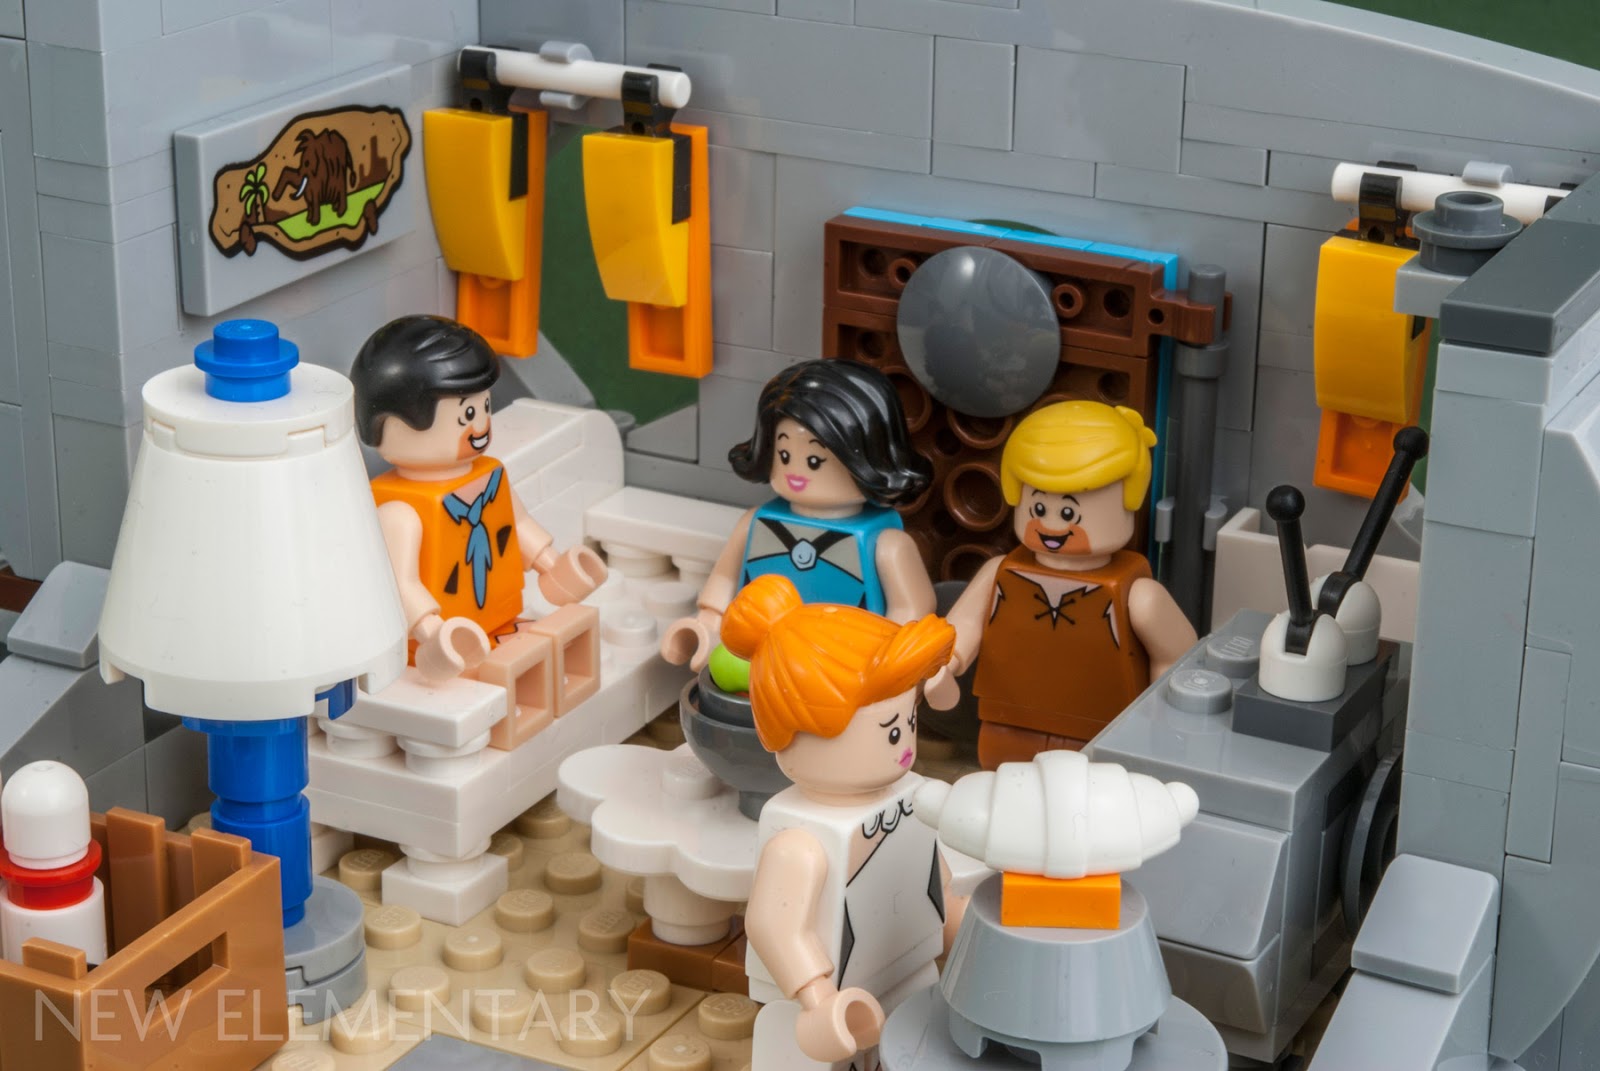 LEGO® Ideas 21316 The Flintstones | New Elementary: LEGO® parts